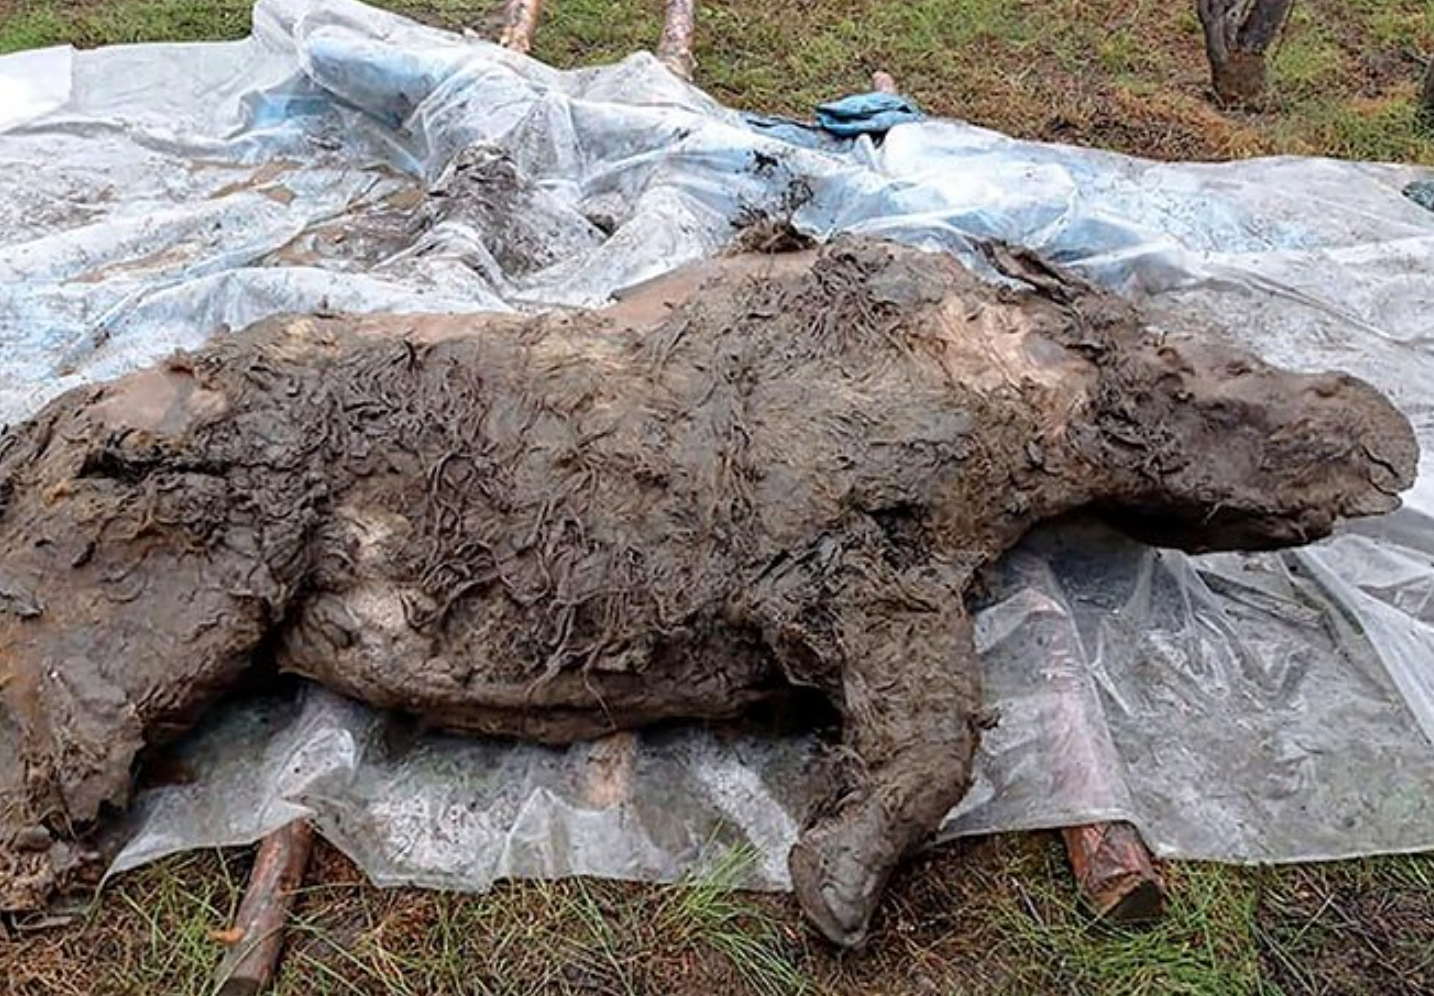 Encuentran un rinoceronte lanudo en excelente estado de conservación en Rusia